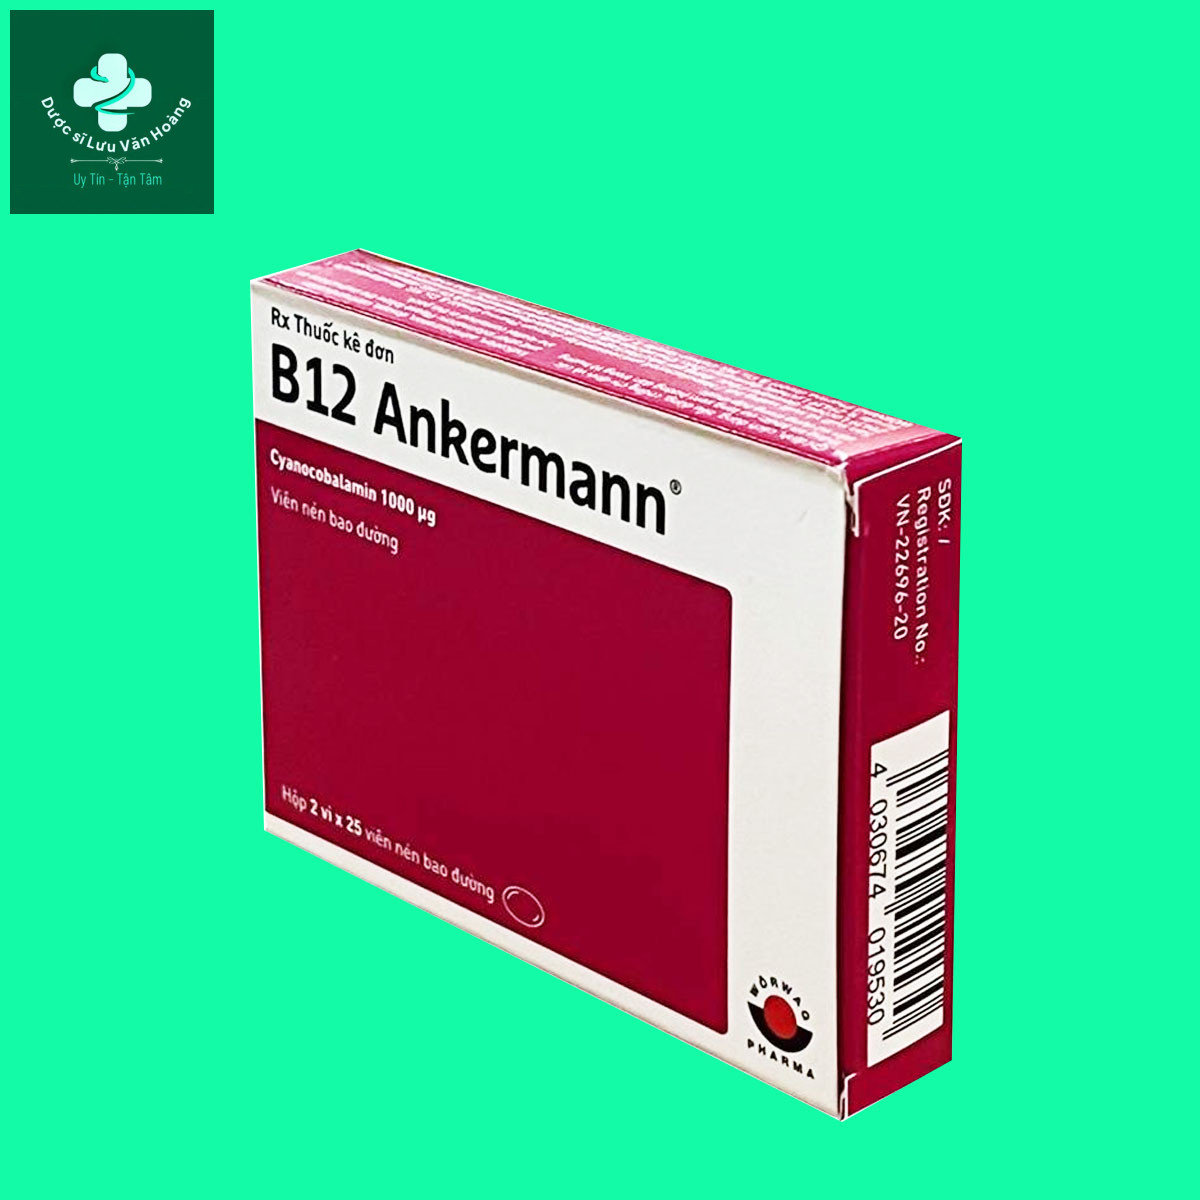 B12 Ankermann - Điều trị thiếu máu, thiếu máu hồng cầu to hoặc dự